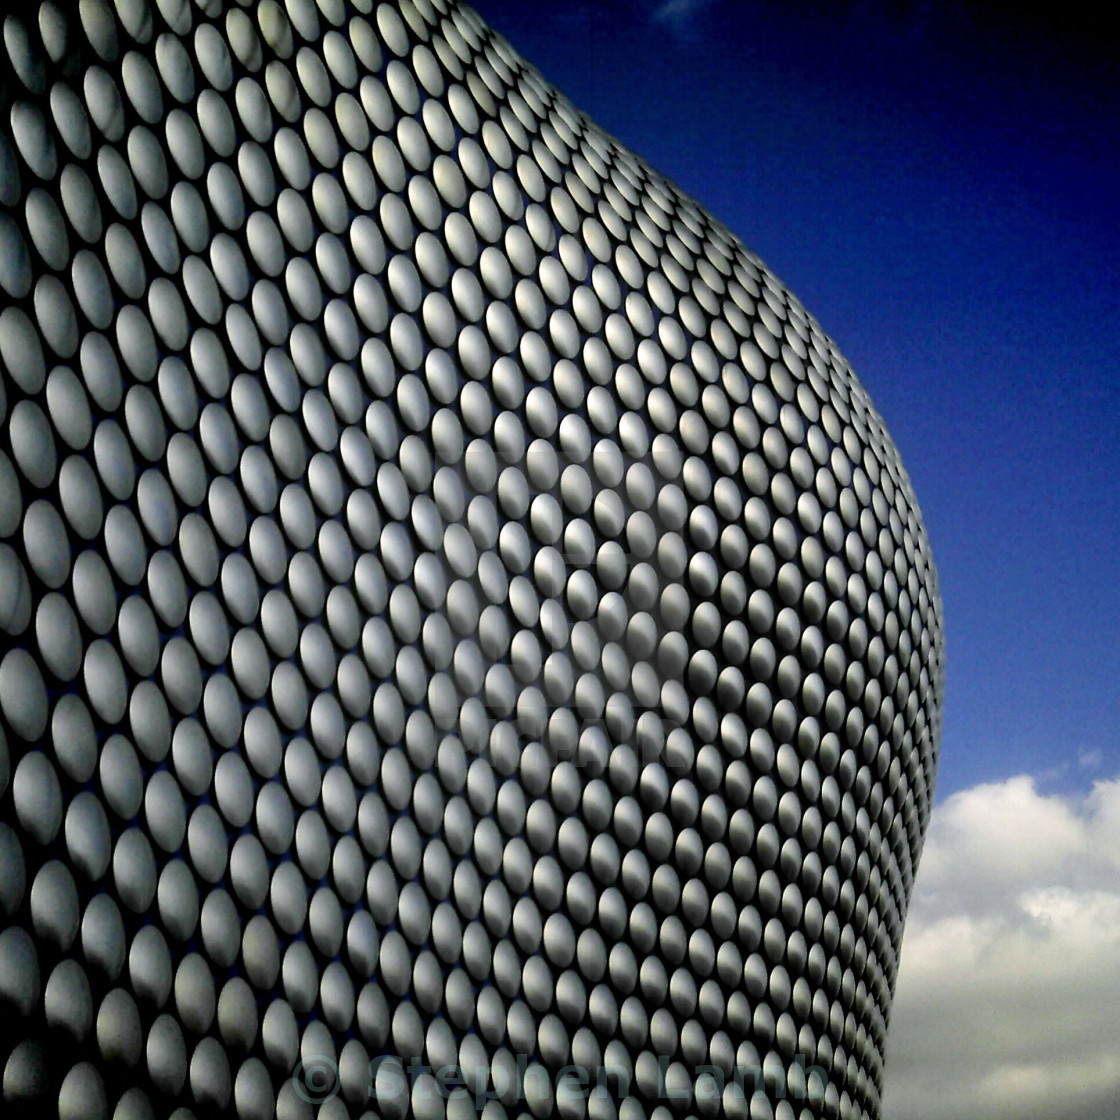 "Birmingham" stock image